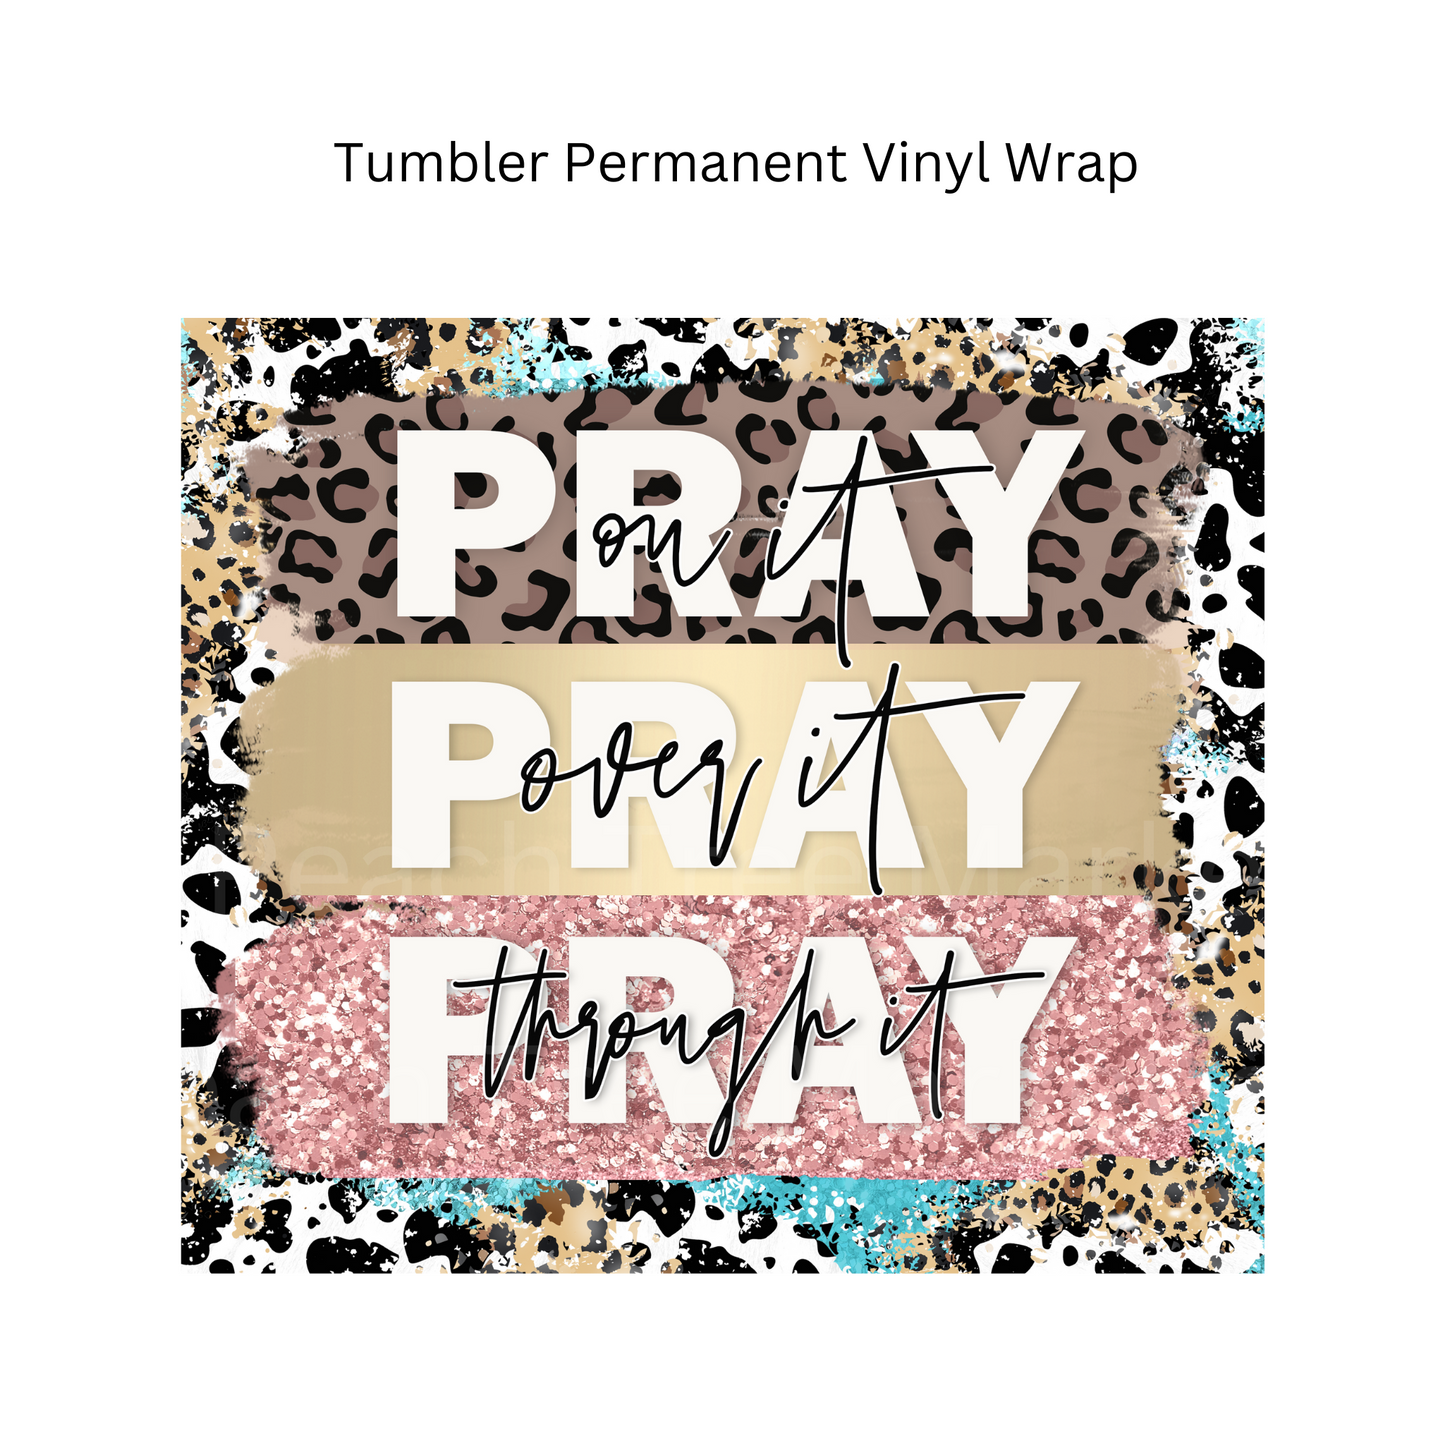 Pray On It Tumbler Permanent Vinyl Wrap